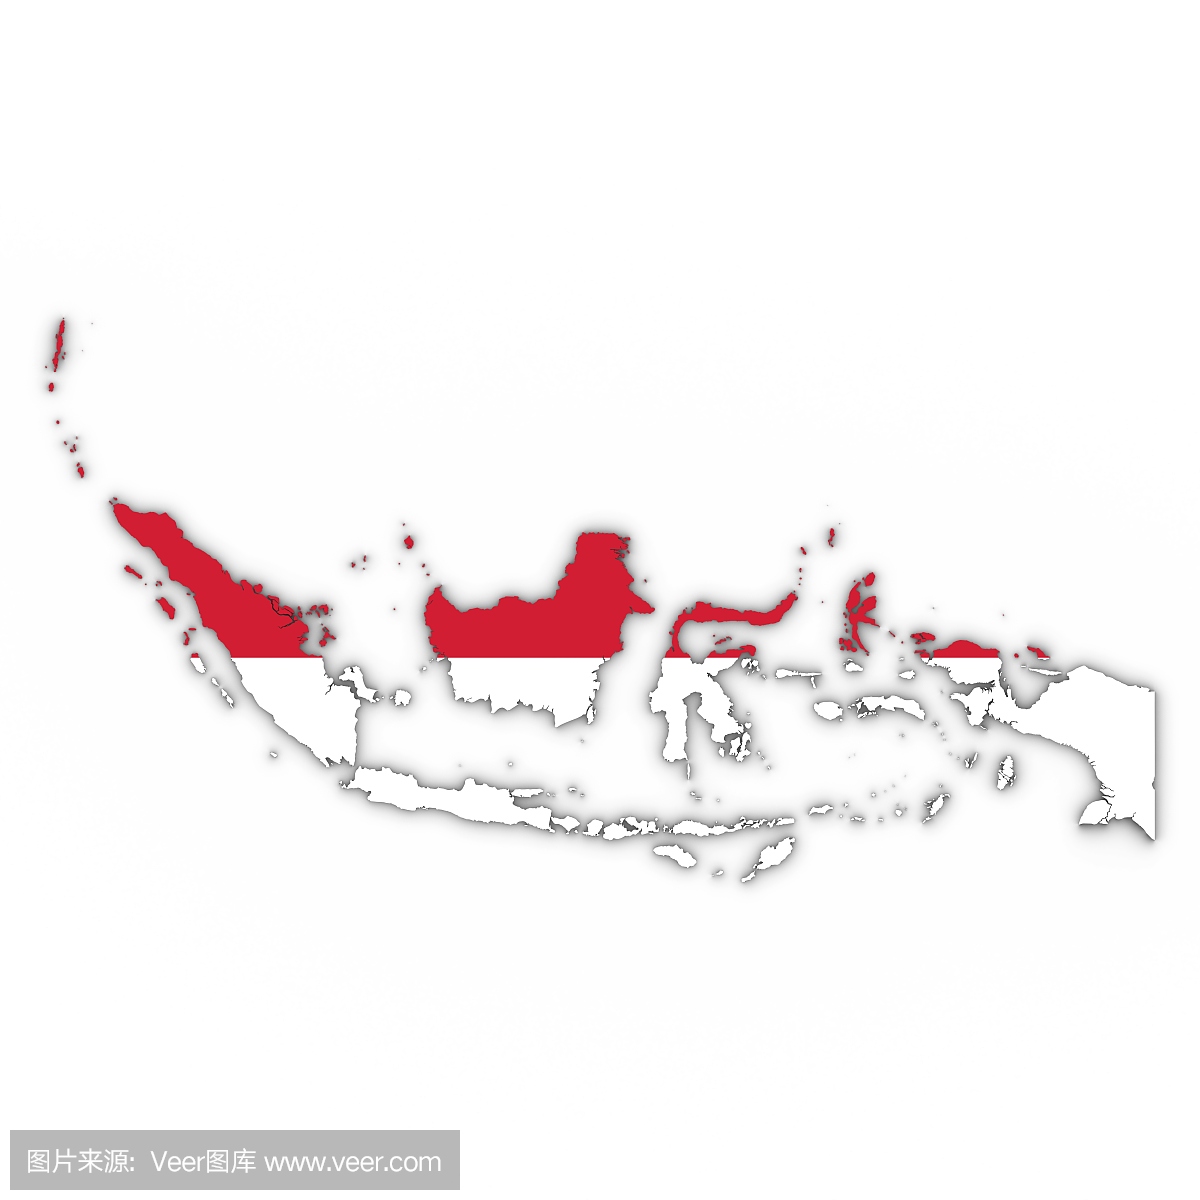 印度尼西亚地图大纲与印度尼西亚国旗在白色与